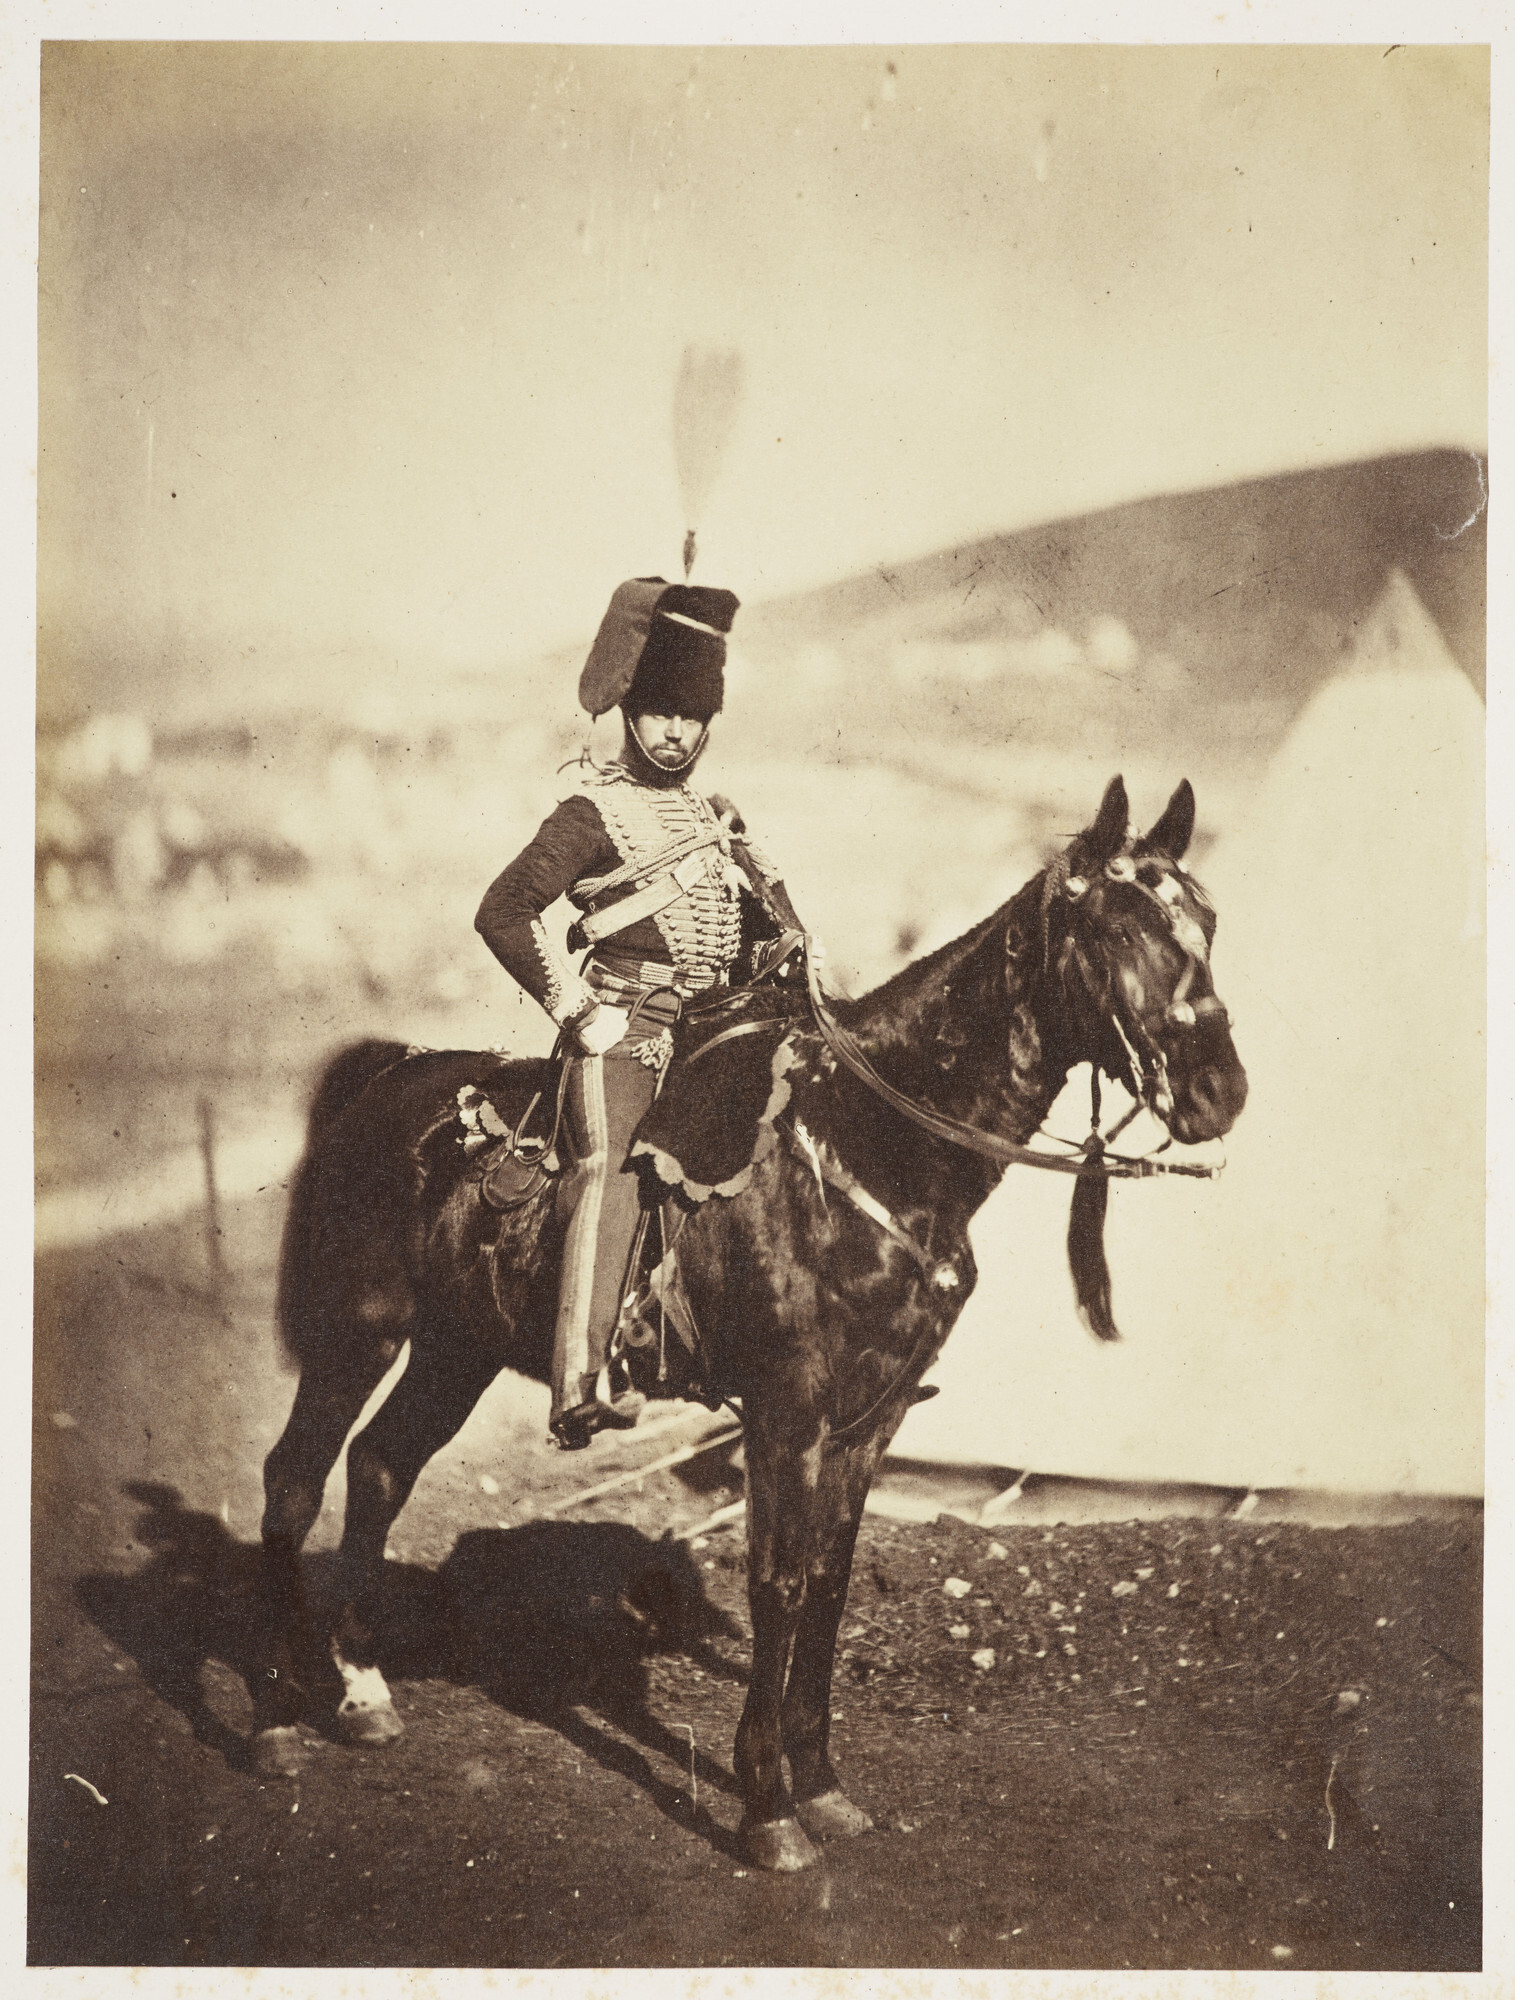 Корнет Генри Джон Уилкин, 11-й гусарский полк, Крым, 1855. Фотограф Роджер Фентон